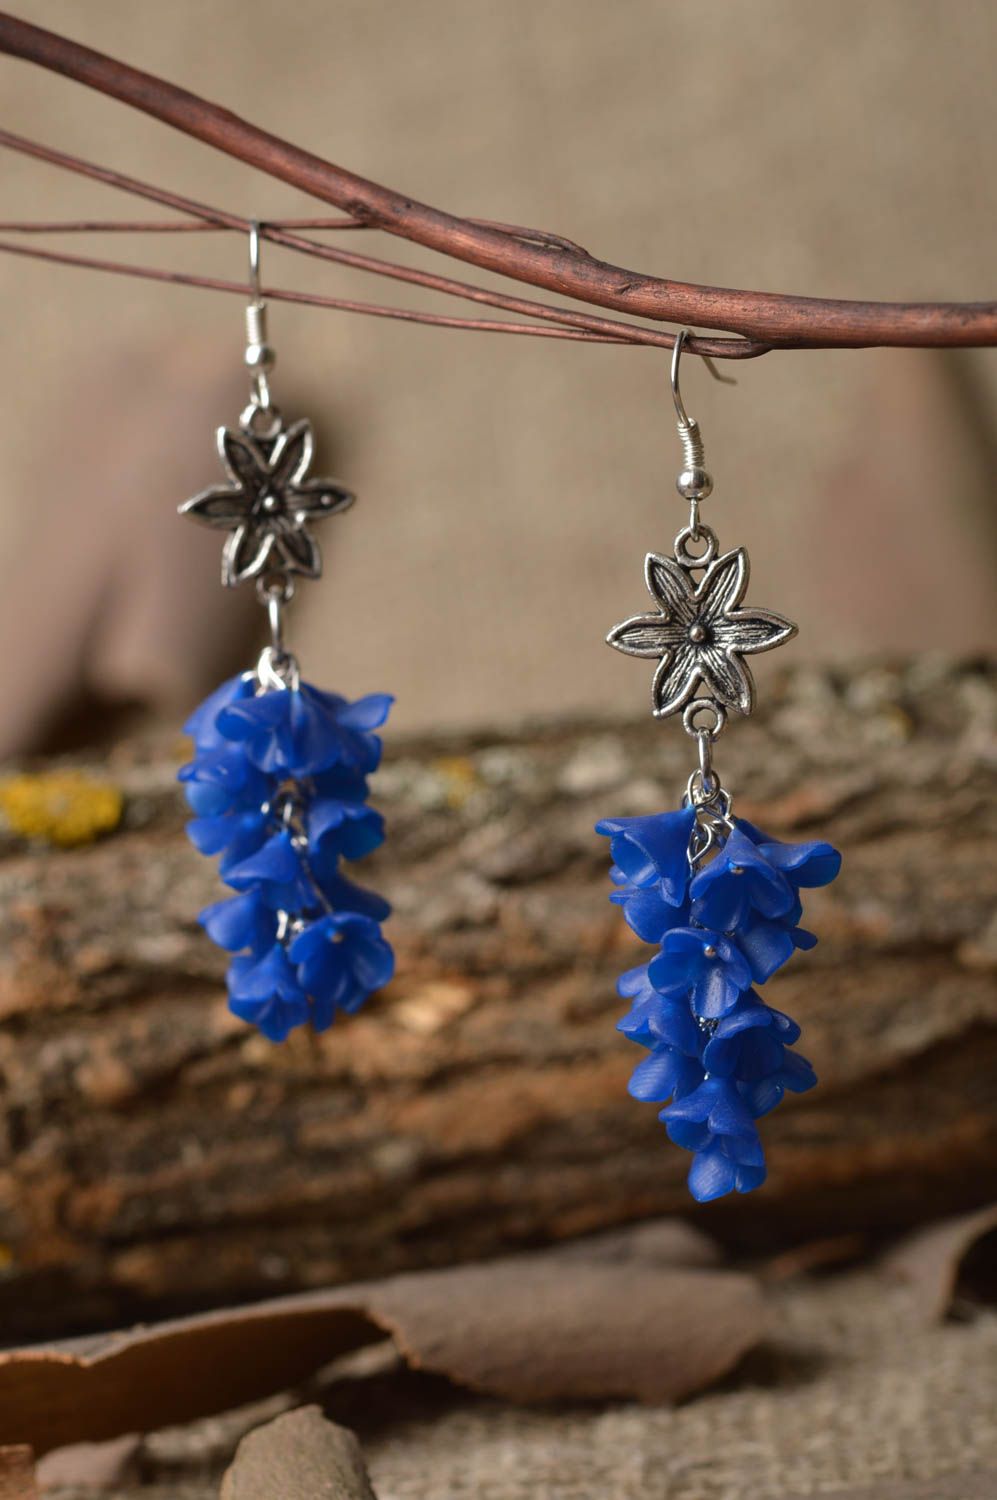 Cute handmade plastic earrings flower earrings beautiful jewellery gift ideas photo 1